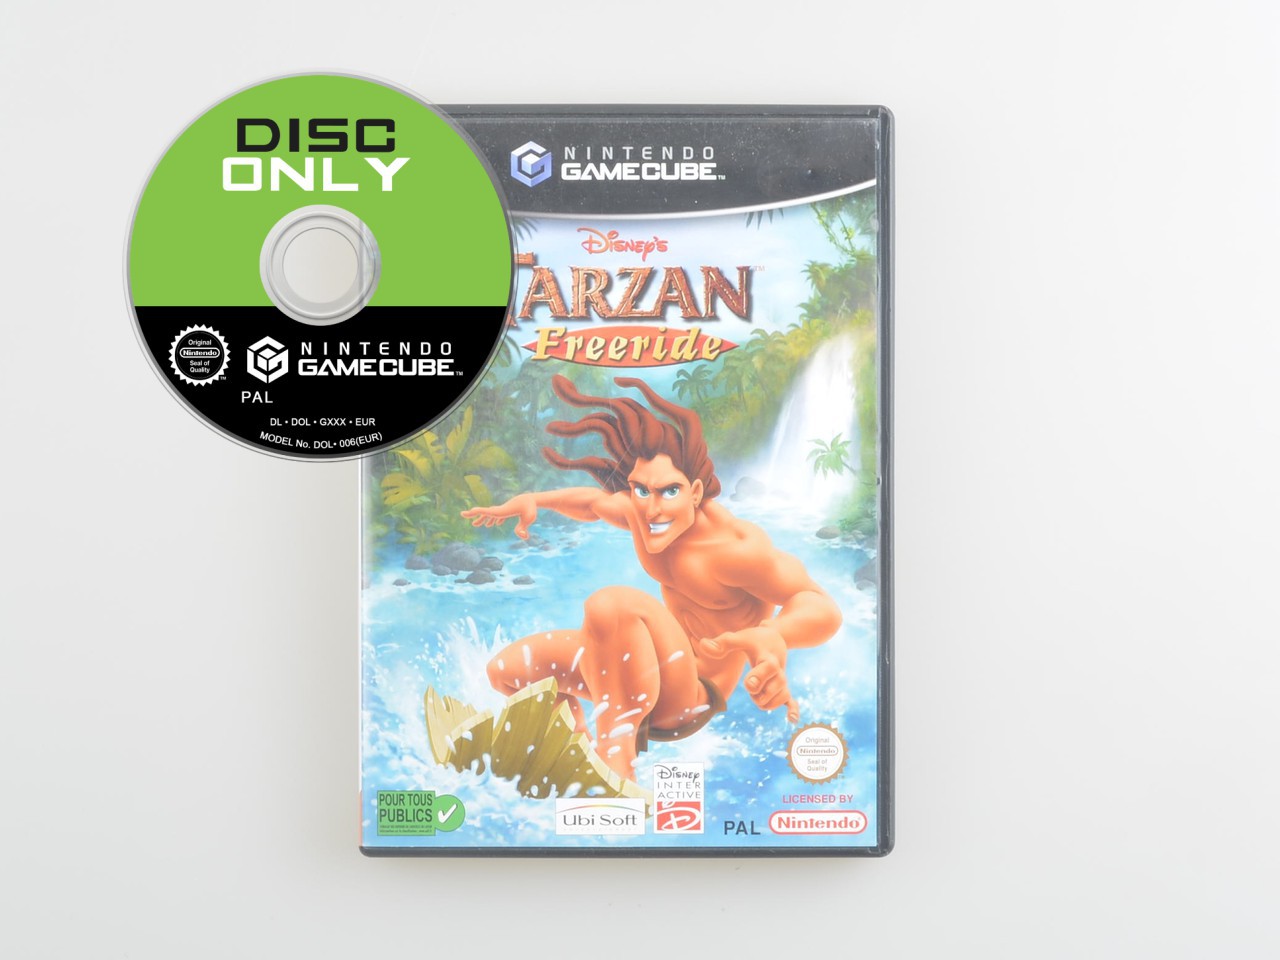 Disney's Tarzan Freeride - Disc Only Kopen | Gamecube Games